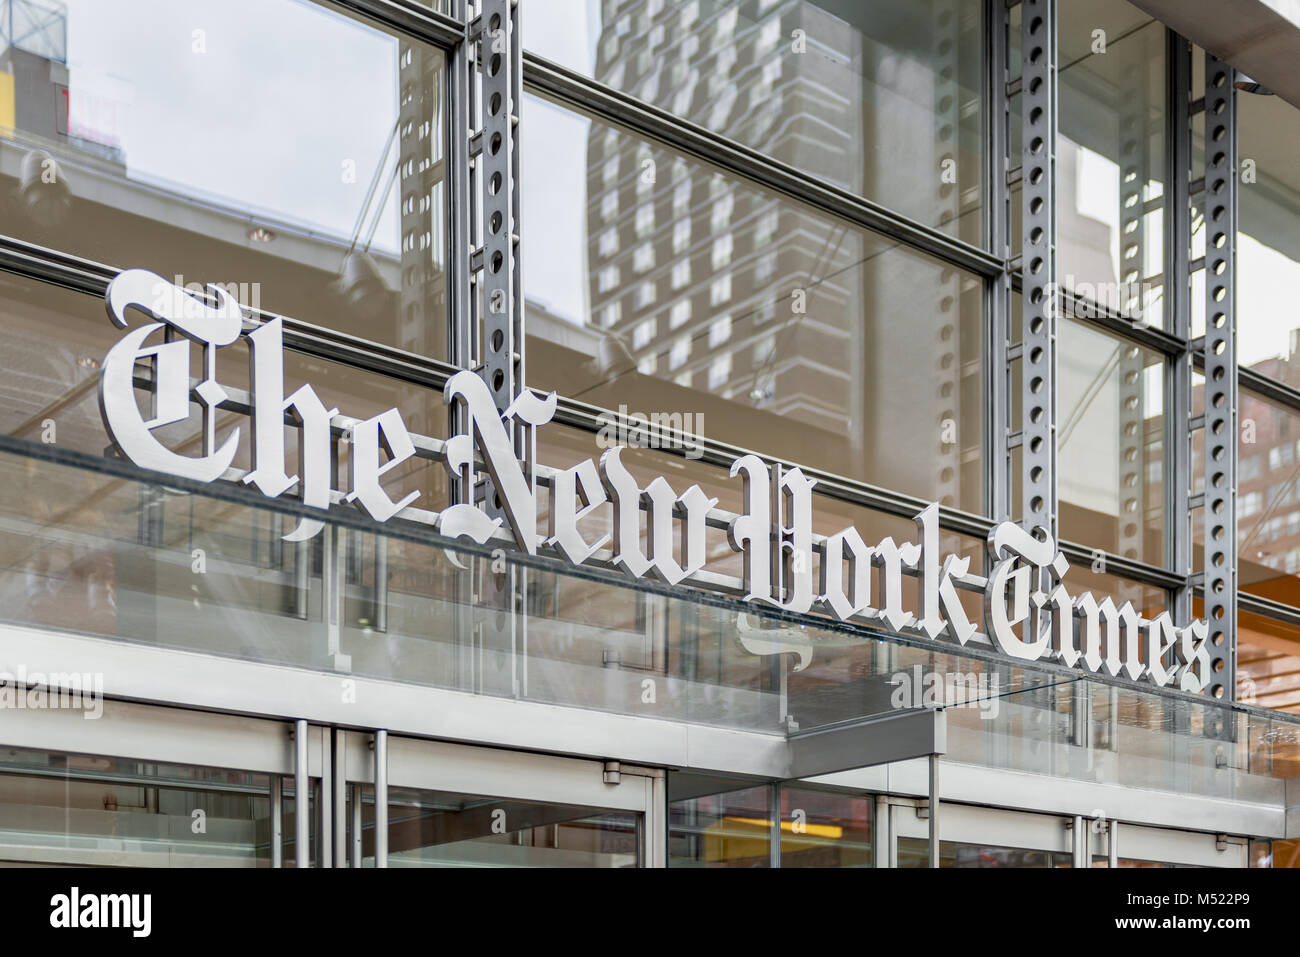 La sede del New York Times en Manhattan, Ciudad de Nueva York, EE.UU. El New York Times es un periódico estadounidense con sede en la Ciudad de Nueva York Foto de stock